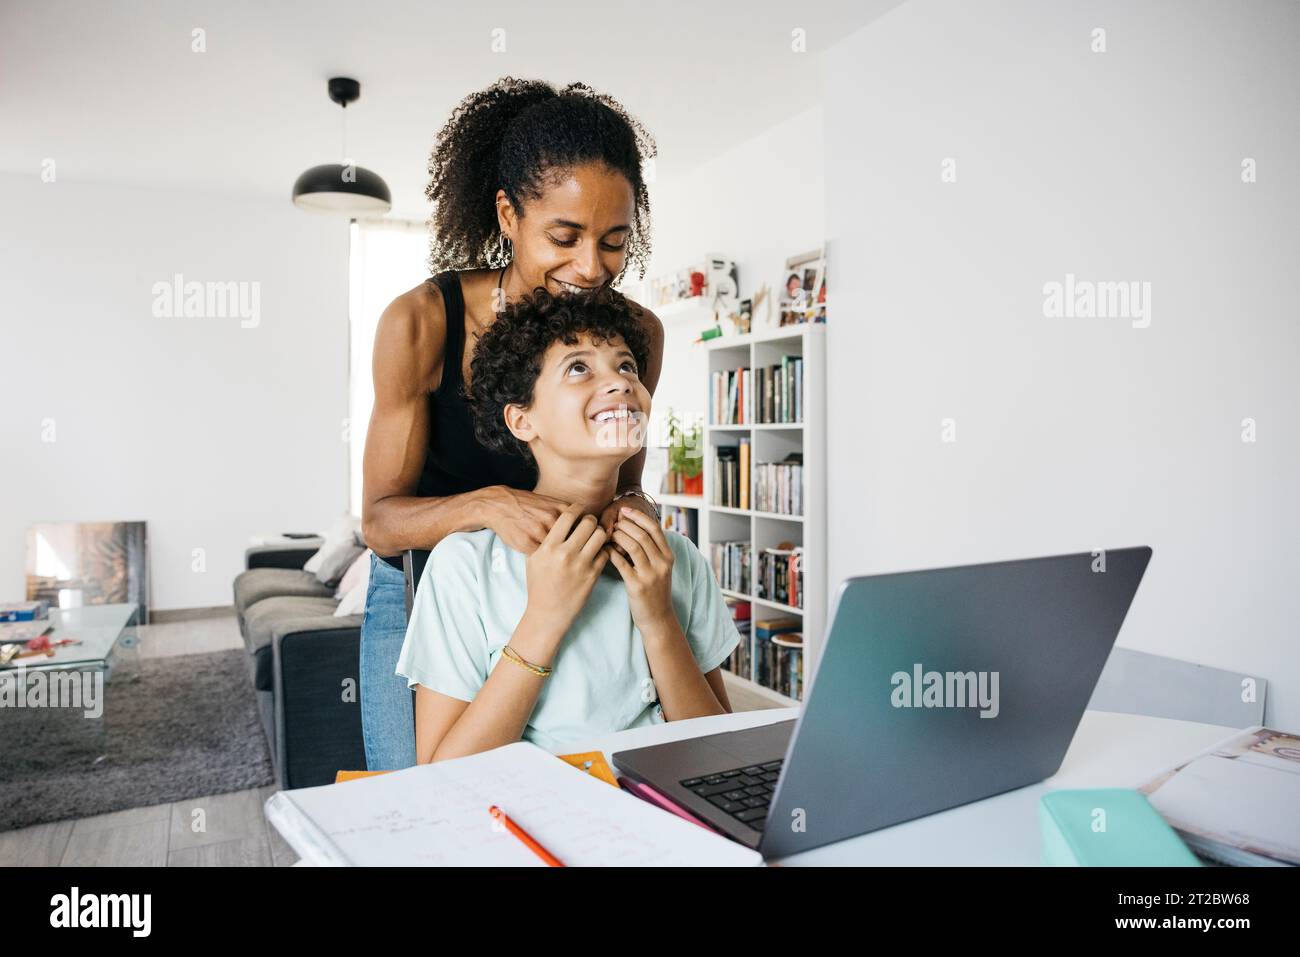 Femme joyeuse aidant sa fille à faire ses devoirs. Mère heureuse aidant sa fille avec les devoirs scolaires dans le salon. Banque D'Images